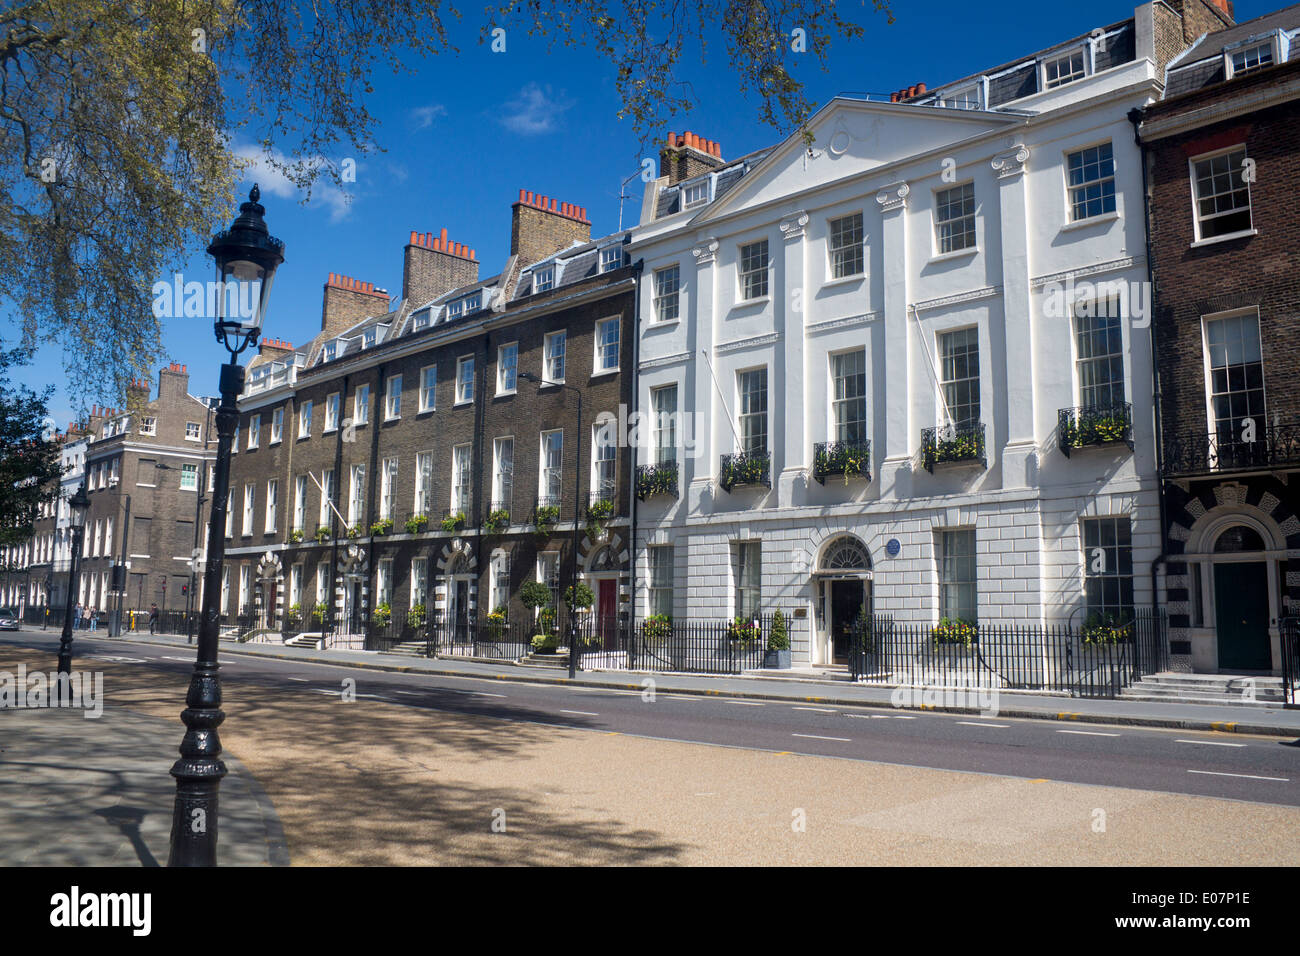 Bedford Square maisons géorgiennes Bloomsbury Londres Angleterre Royaume-uni Banque D'Images